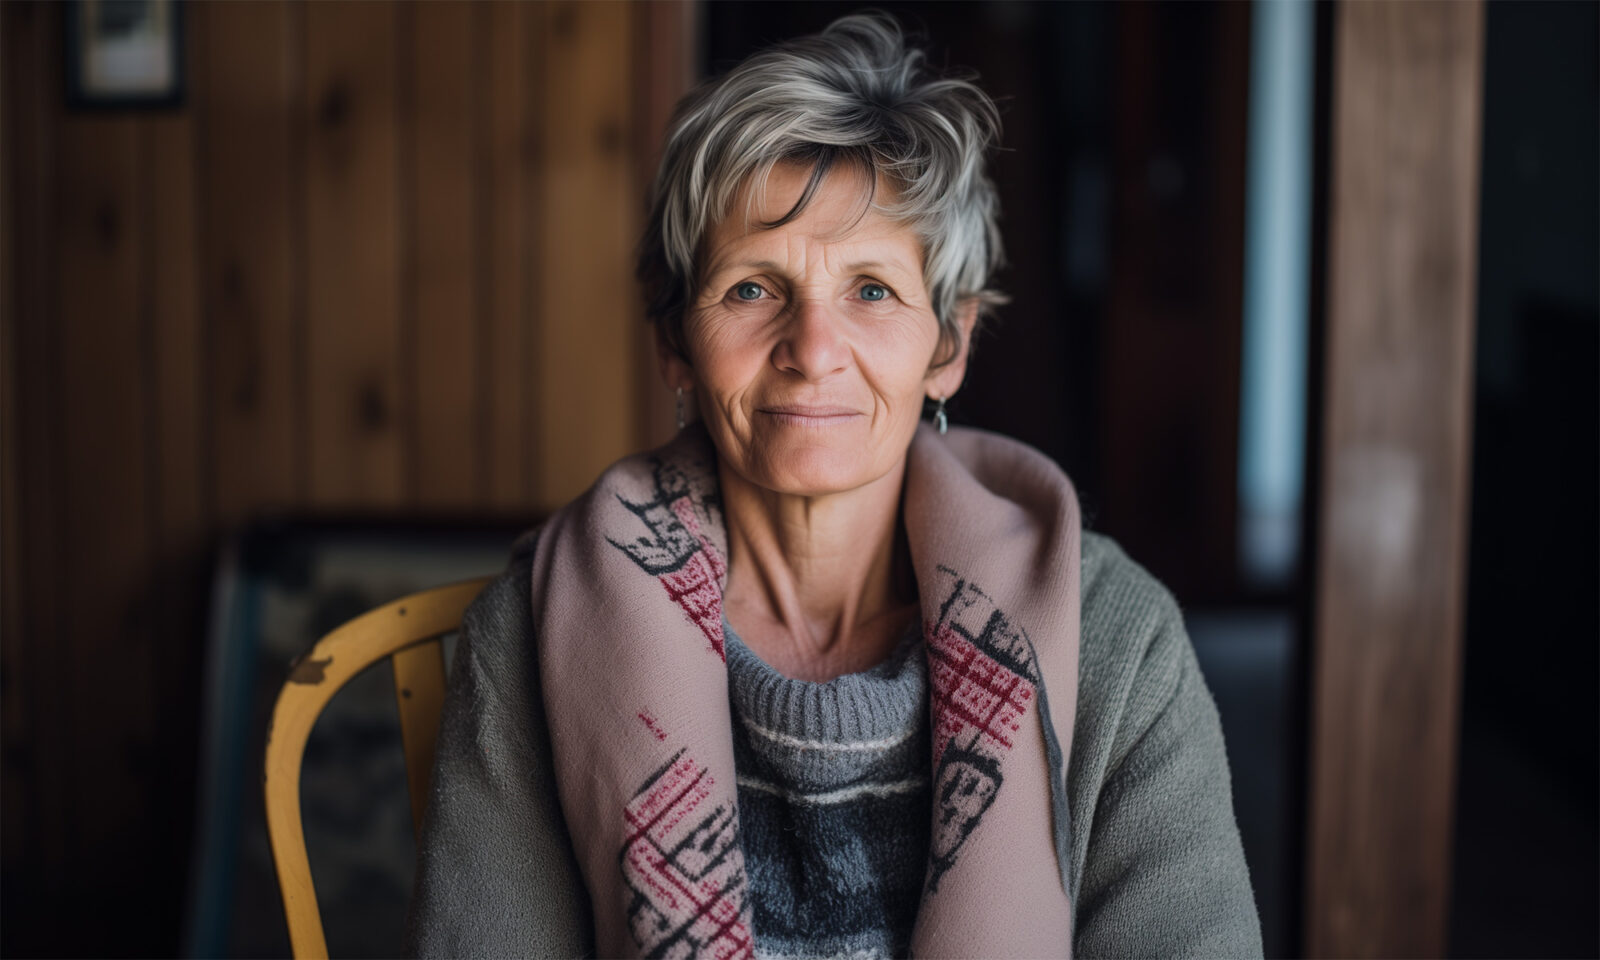 Sandra, 50-godišnja Čakovčanka, u invalidskoj mirovini od 37. godine zbog brojnih bolesti. Hašimoto i menopauza donijeli su nove izazove. Bez obiteljske podrške, hrabro se bori uz lijekove, terapije i nadu.